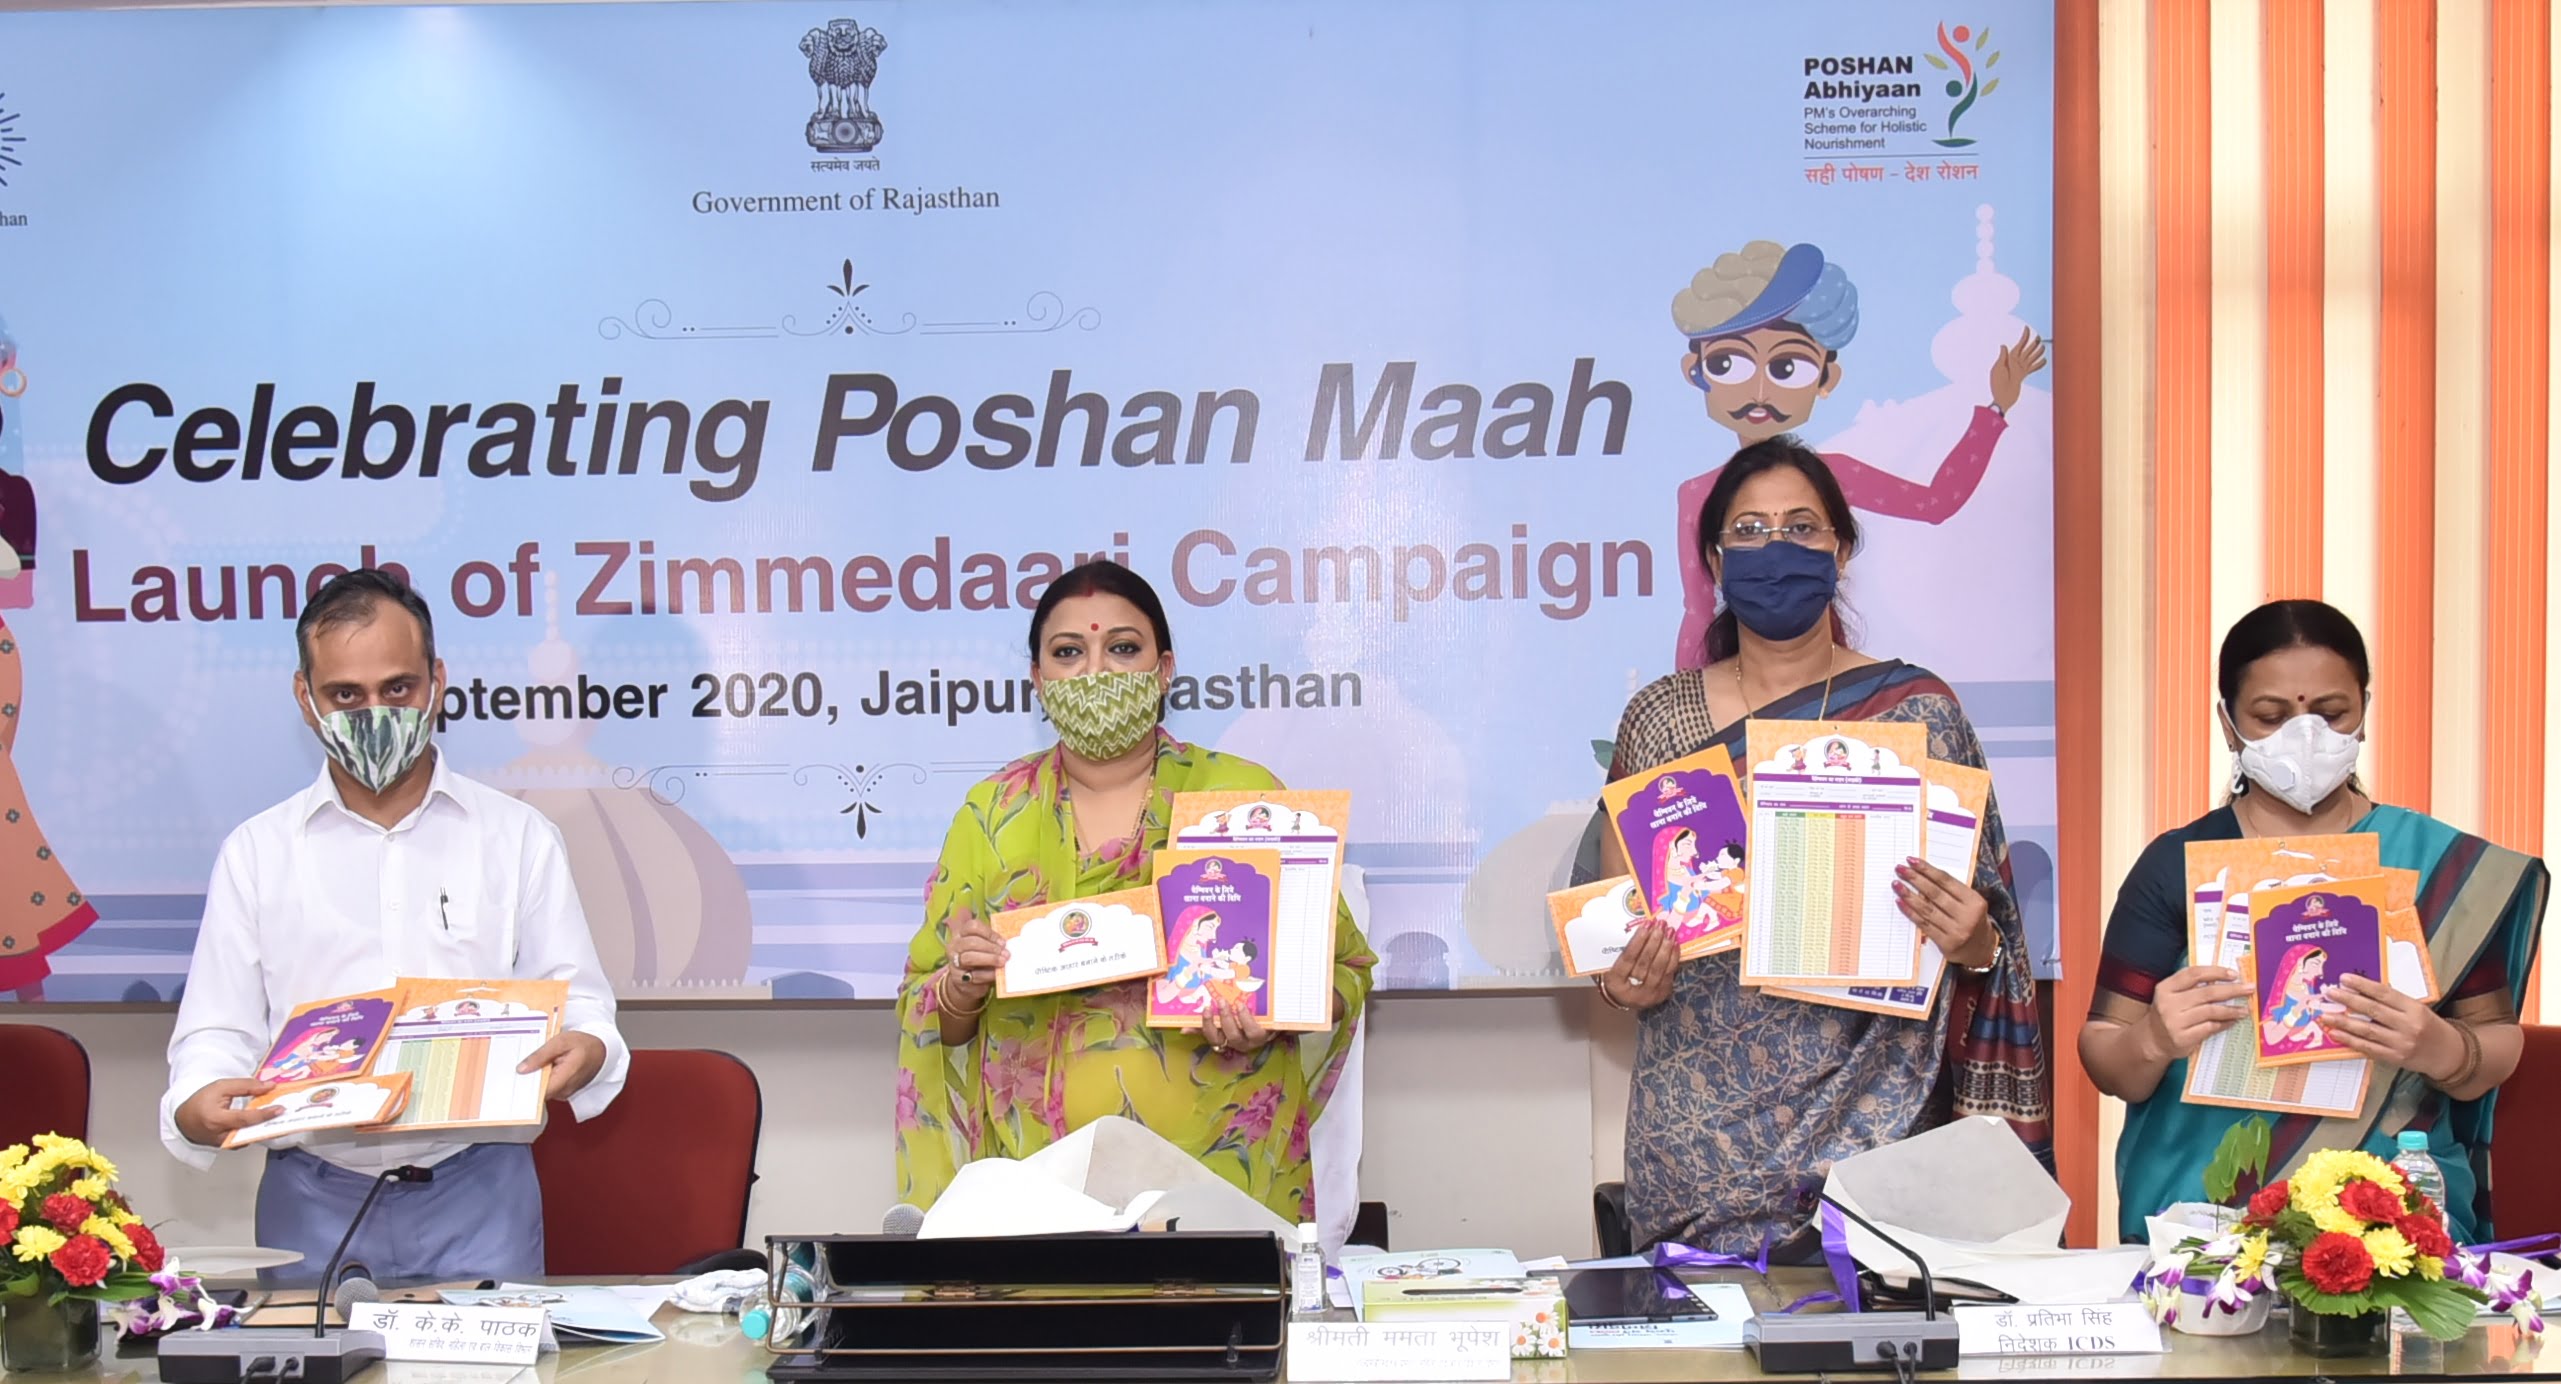 Launch of Zimmedari Campaign by Mamta Bhupesh, Minister, Women & Child Development